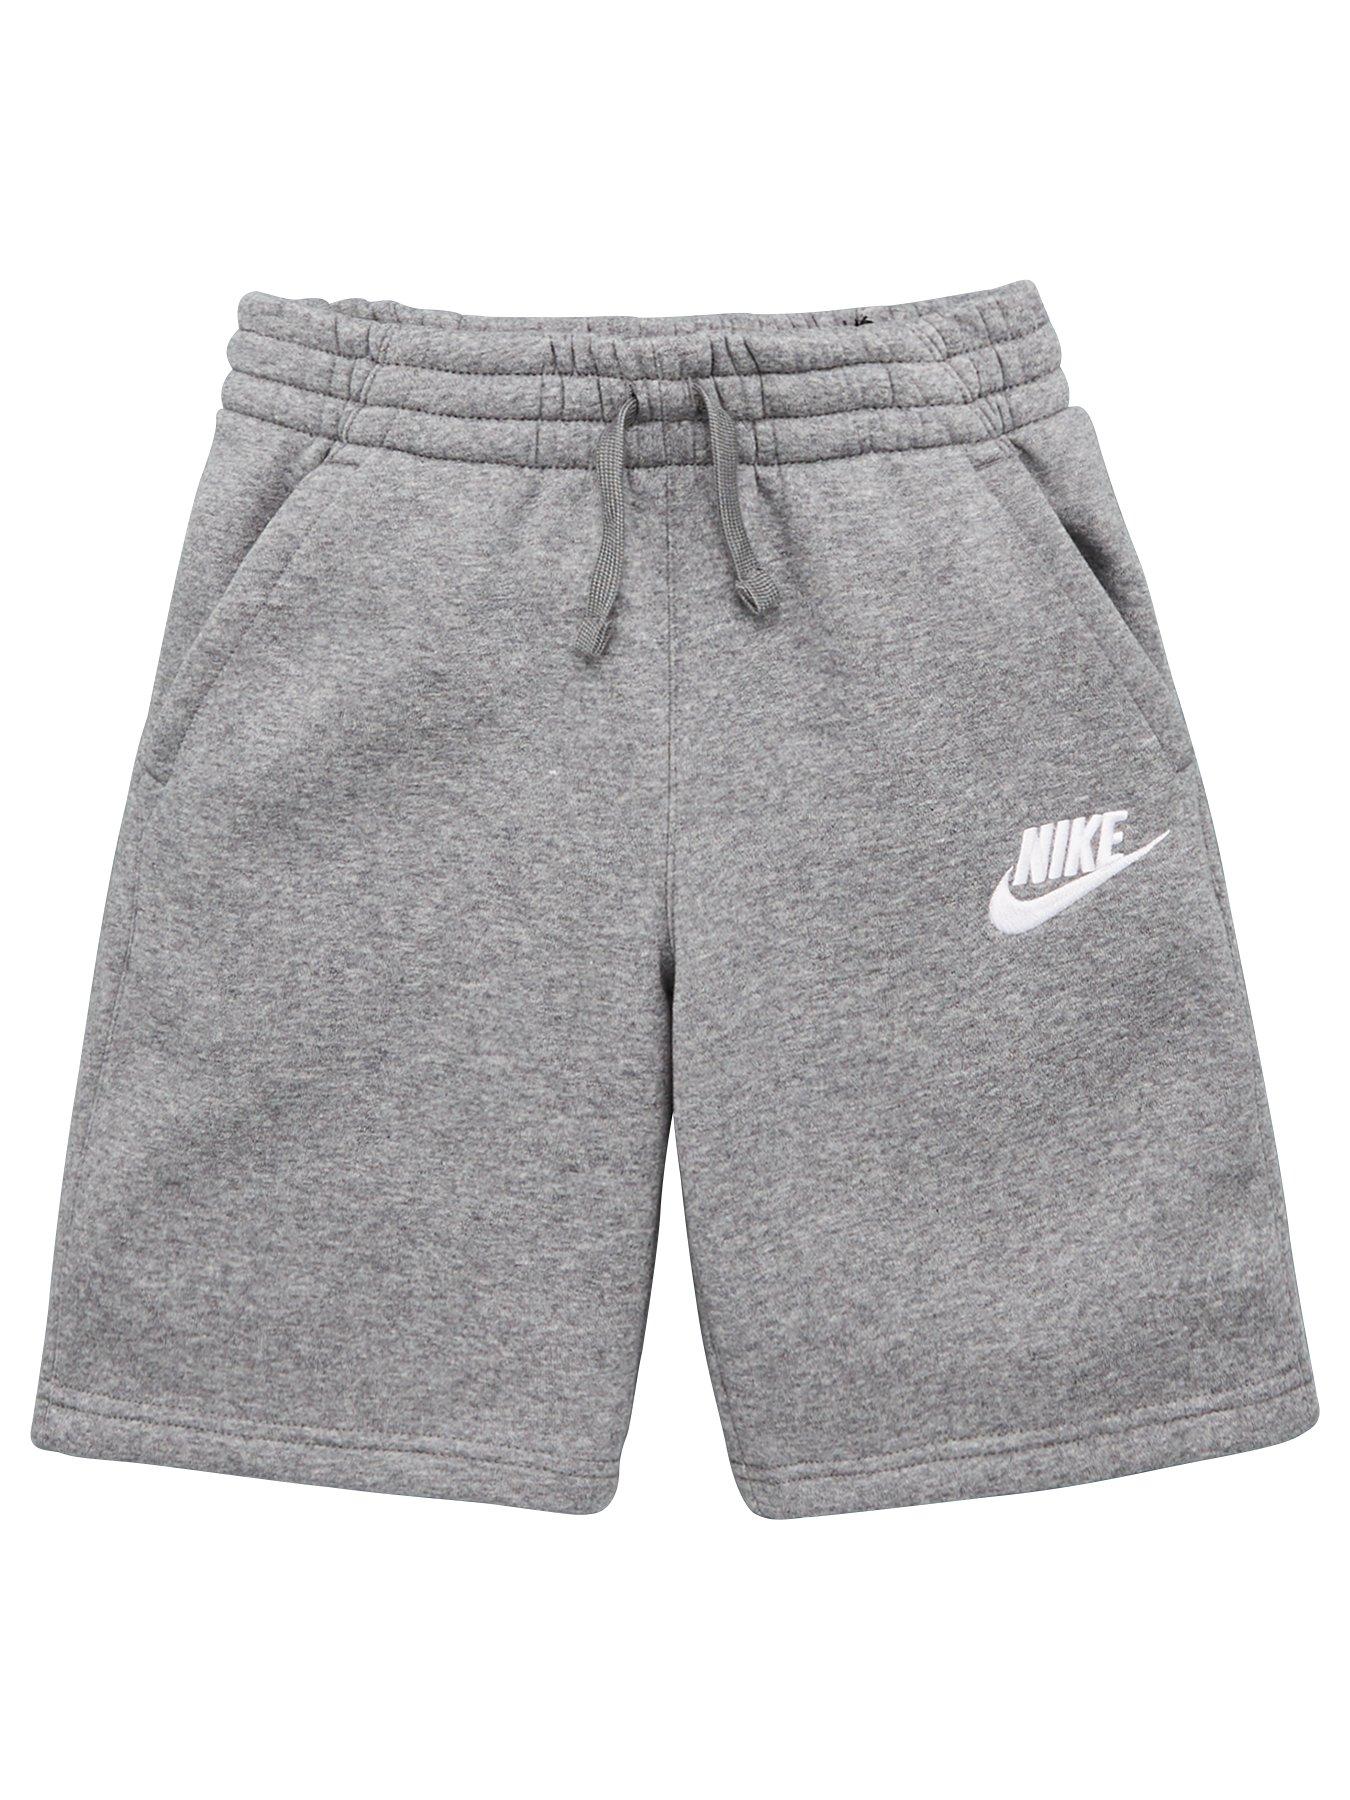 nike club shorts grey